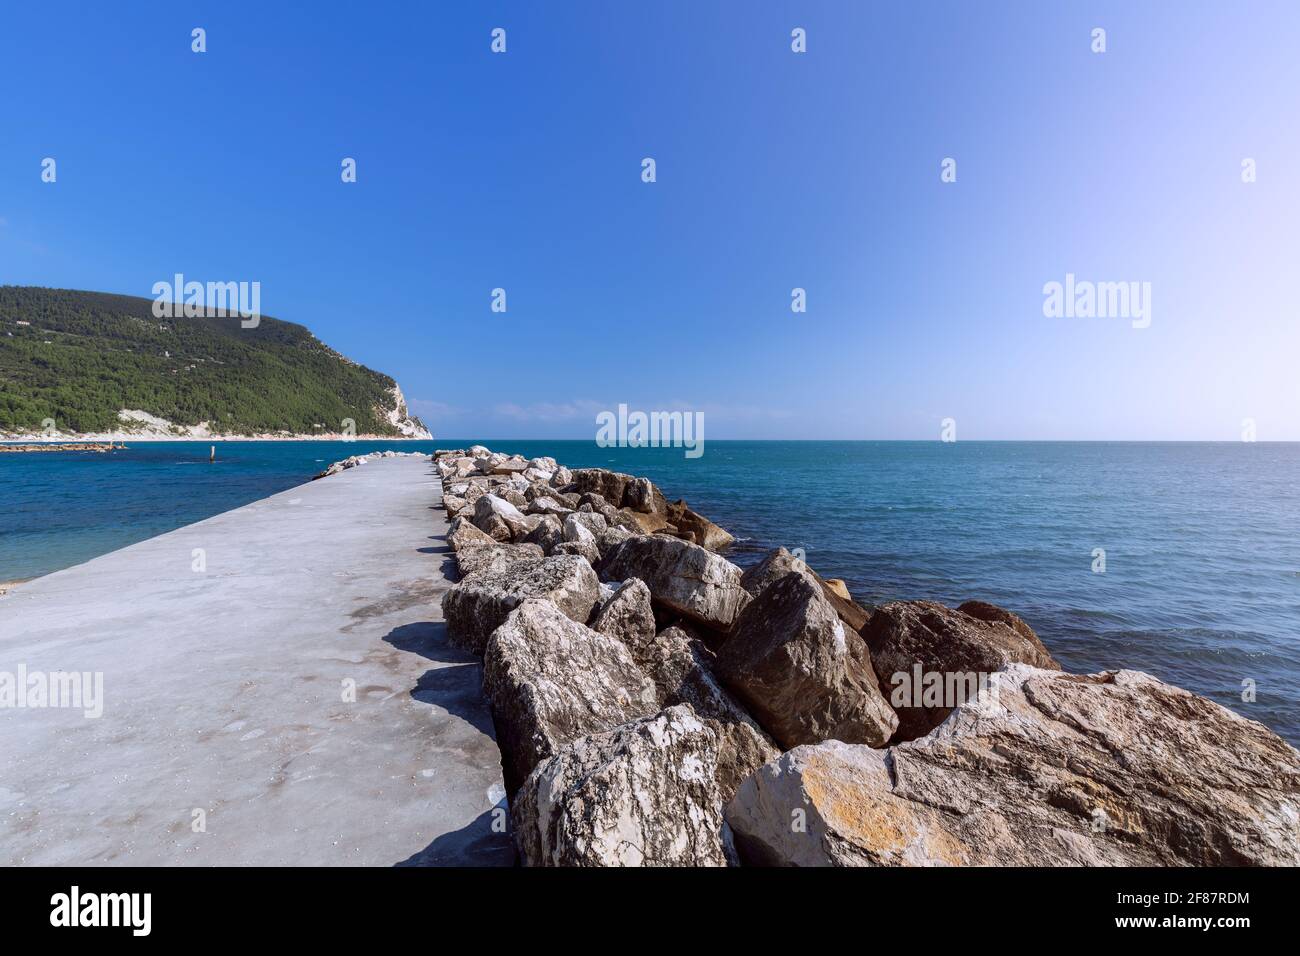 Marine pier on the beach Urbani in Sirolo, Ancona, Italy Stock Photo